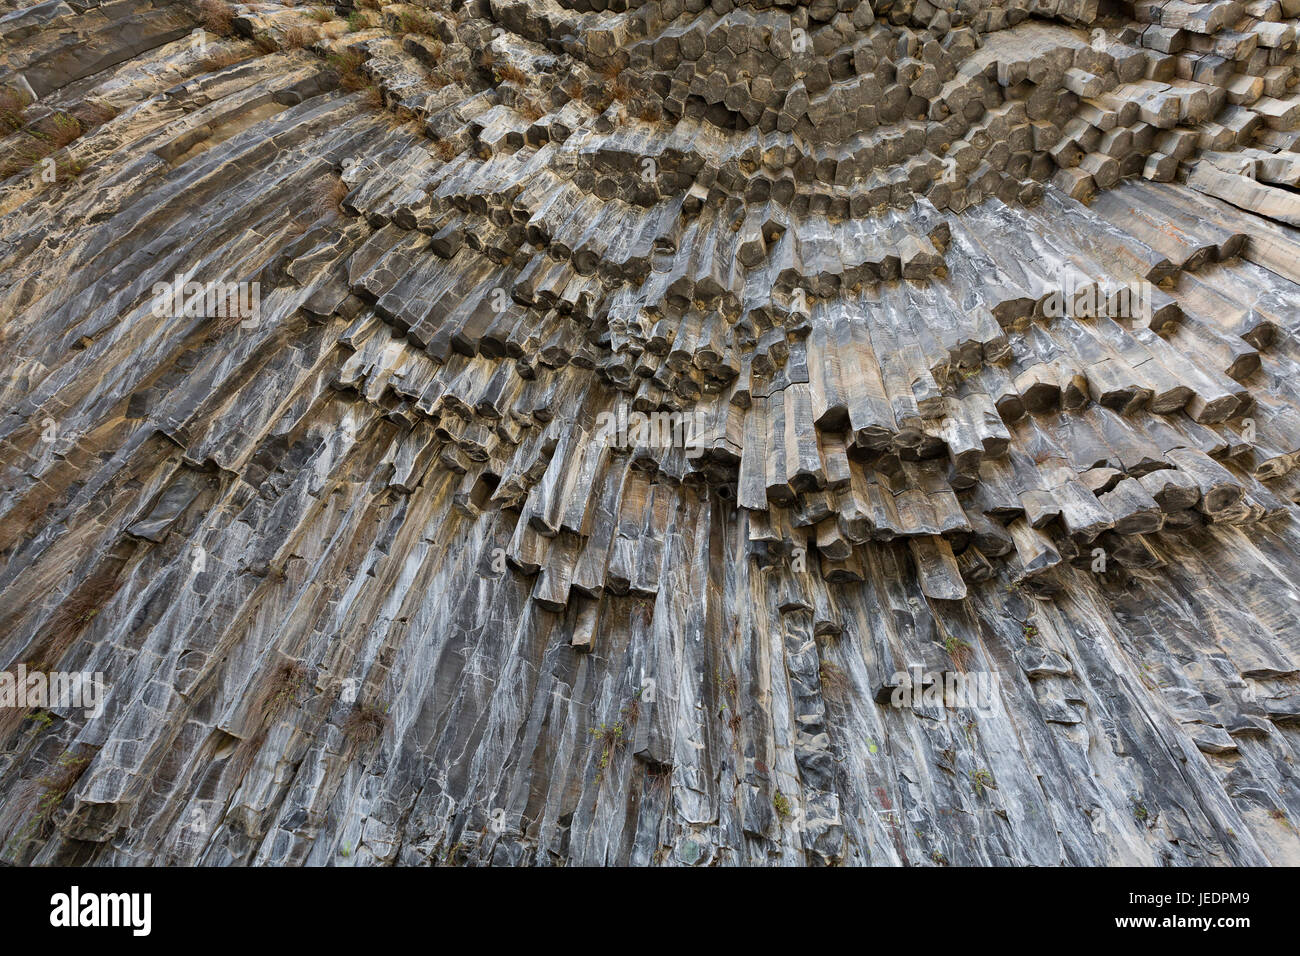 Formaciones de roca basáltica conocida como la Sinfonía de piedras en Armenia. Foto de stock